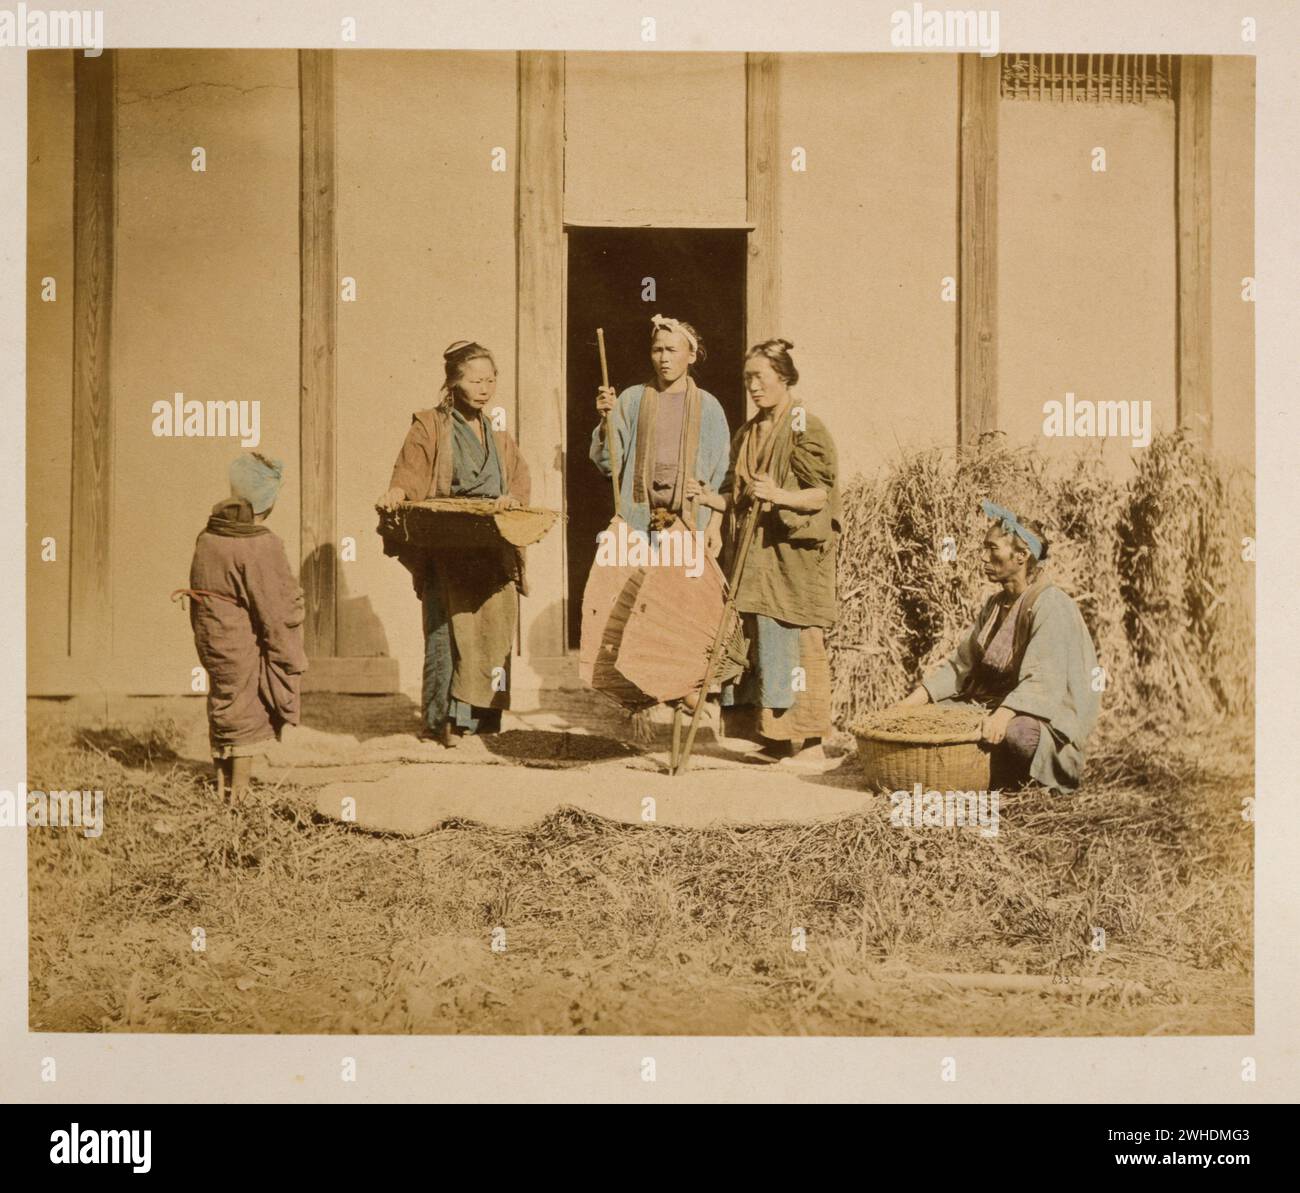 Eine Gruppe von Menschen, möglicherweise Straßenverkäufer oder Bauern, zwei Männer und zwei Frauen, zwei halten Körbe und eine Person mit Rücken zur Kamera... Japan handkoloriert mit Aquarell Fotografie Print um die 1870er Jahre Stockfoto